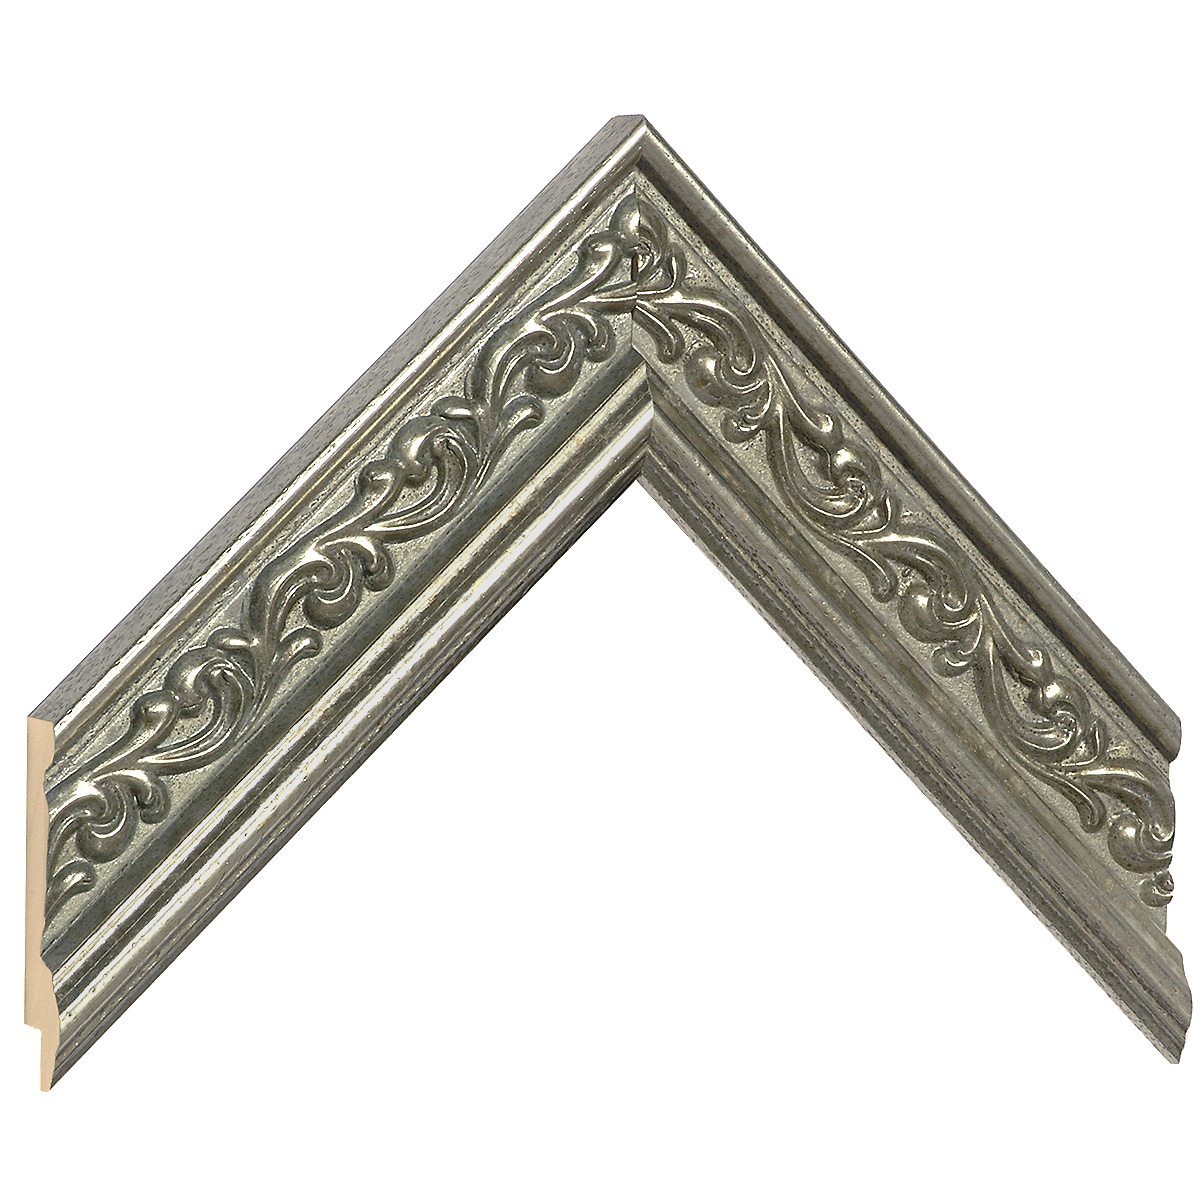 Profil ayous Lăț.44 mm Înălț.22 - argintiu cu decorațiuni în relief - Mostră